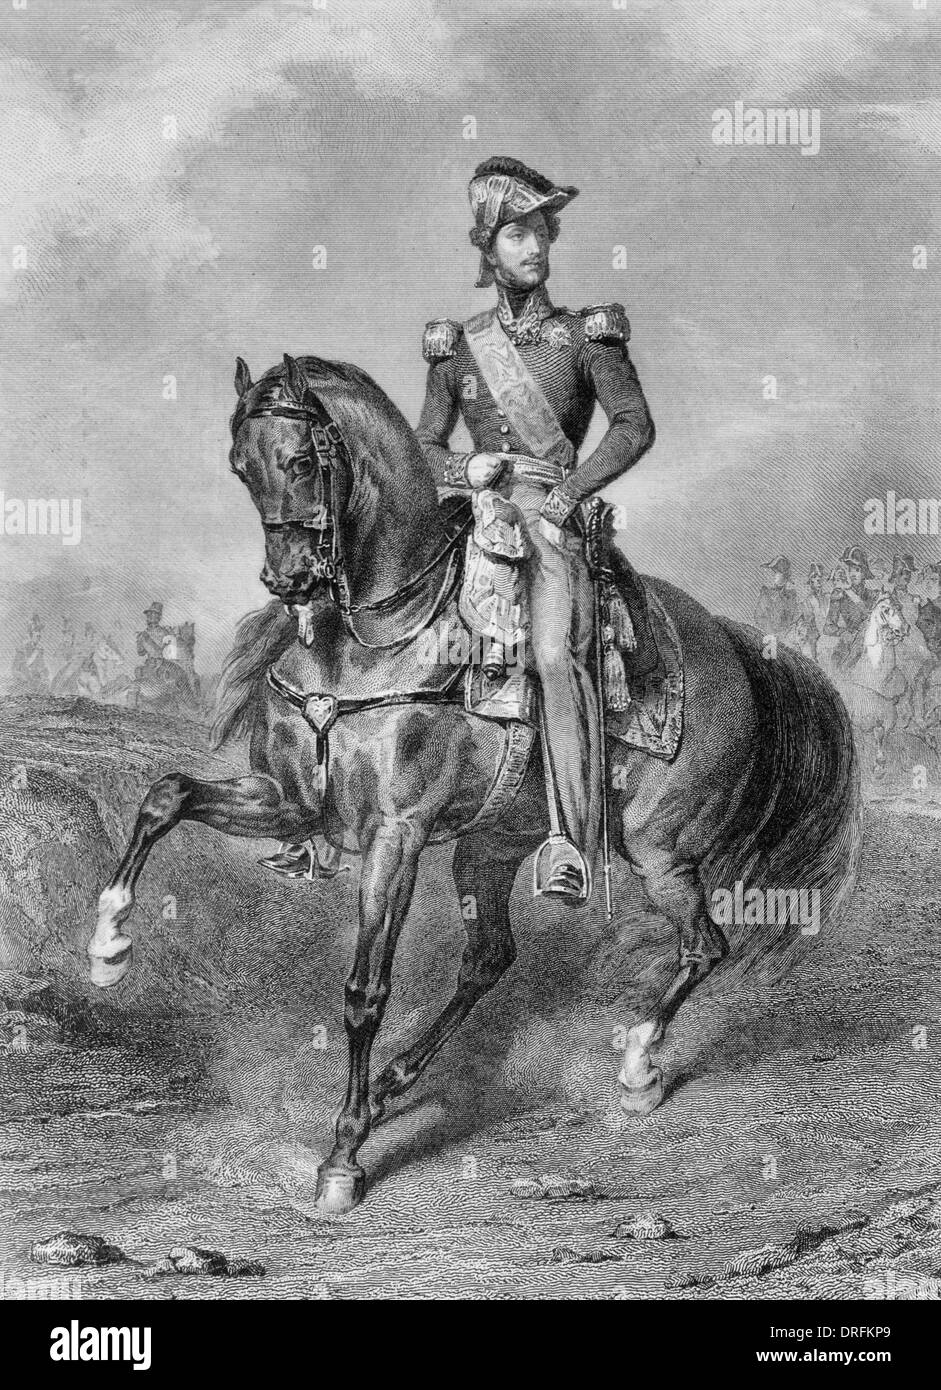 Prinz Ferdinand Philippe von Orleans (3. September 1810 – 13. Juli 1842) war der älteste Sohn von Louis Philippe d'Orléans, Herzog von Orléans und späteren König Louis Philippe ich. Stockfoto